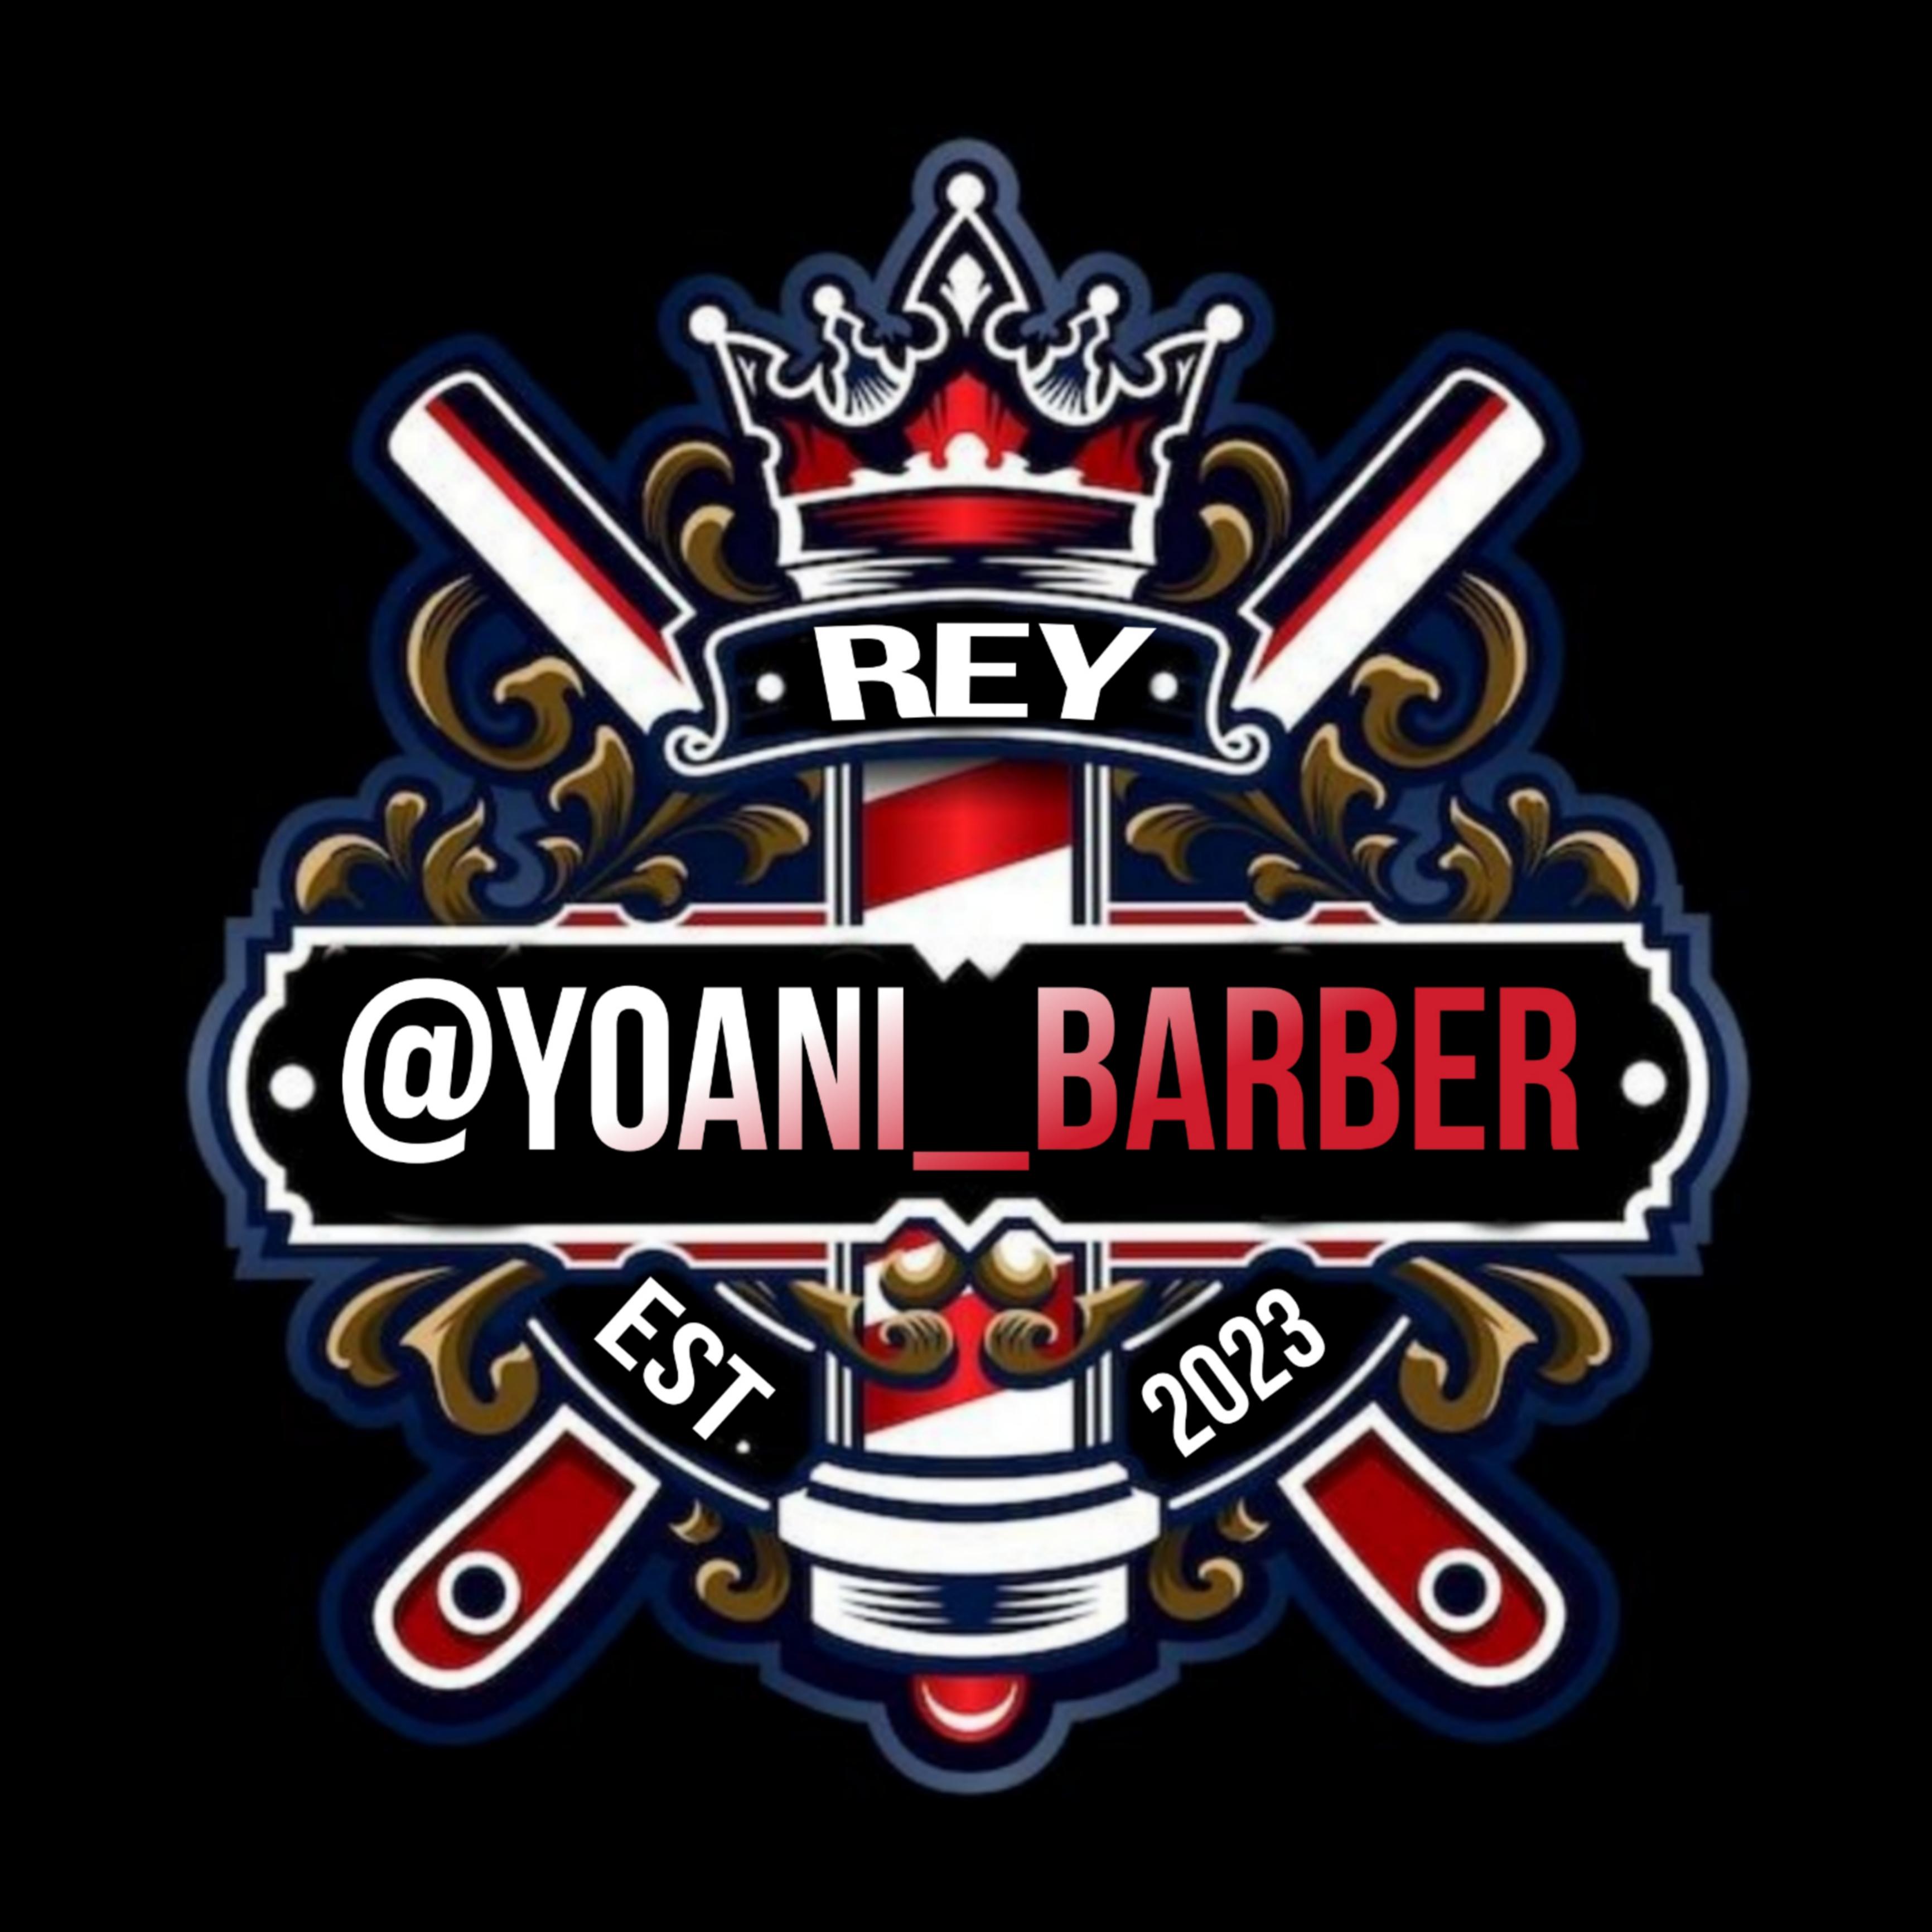 Yoani_barber, Barbería Logo